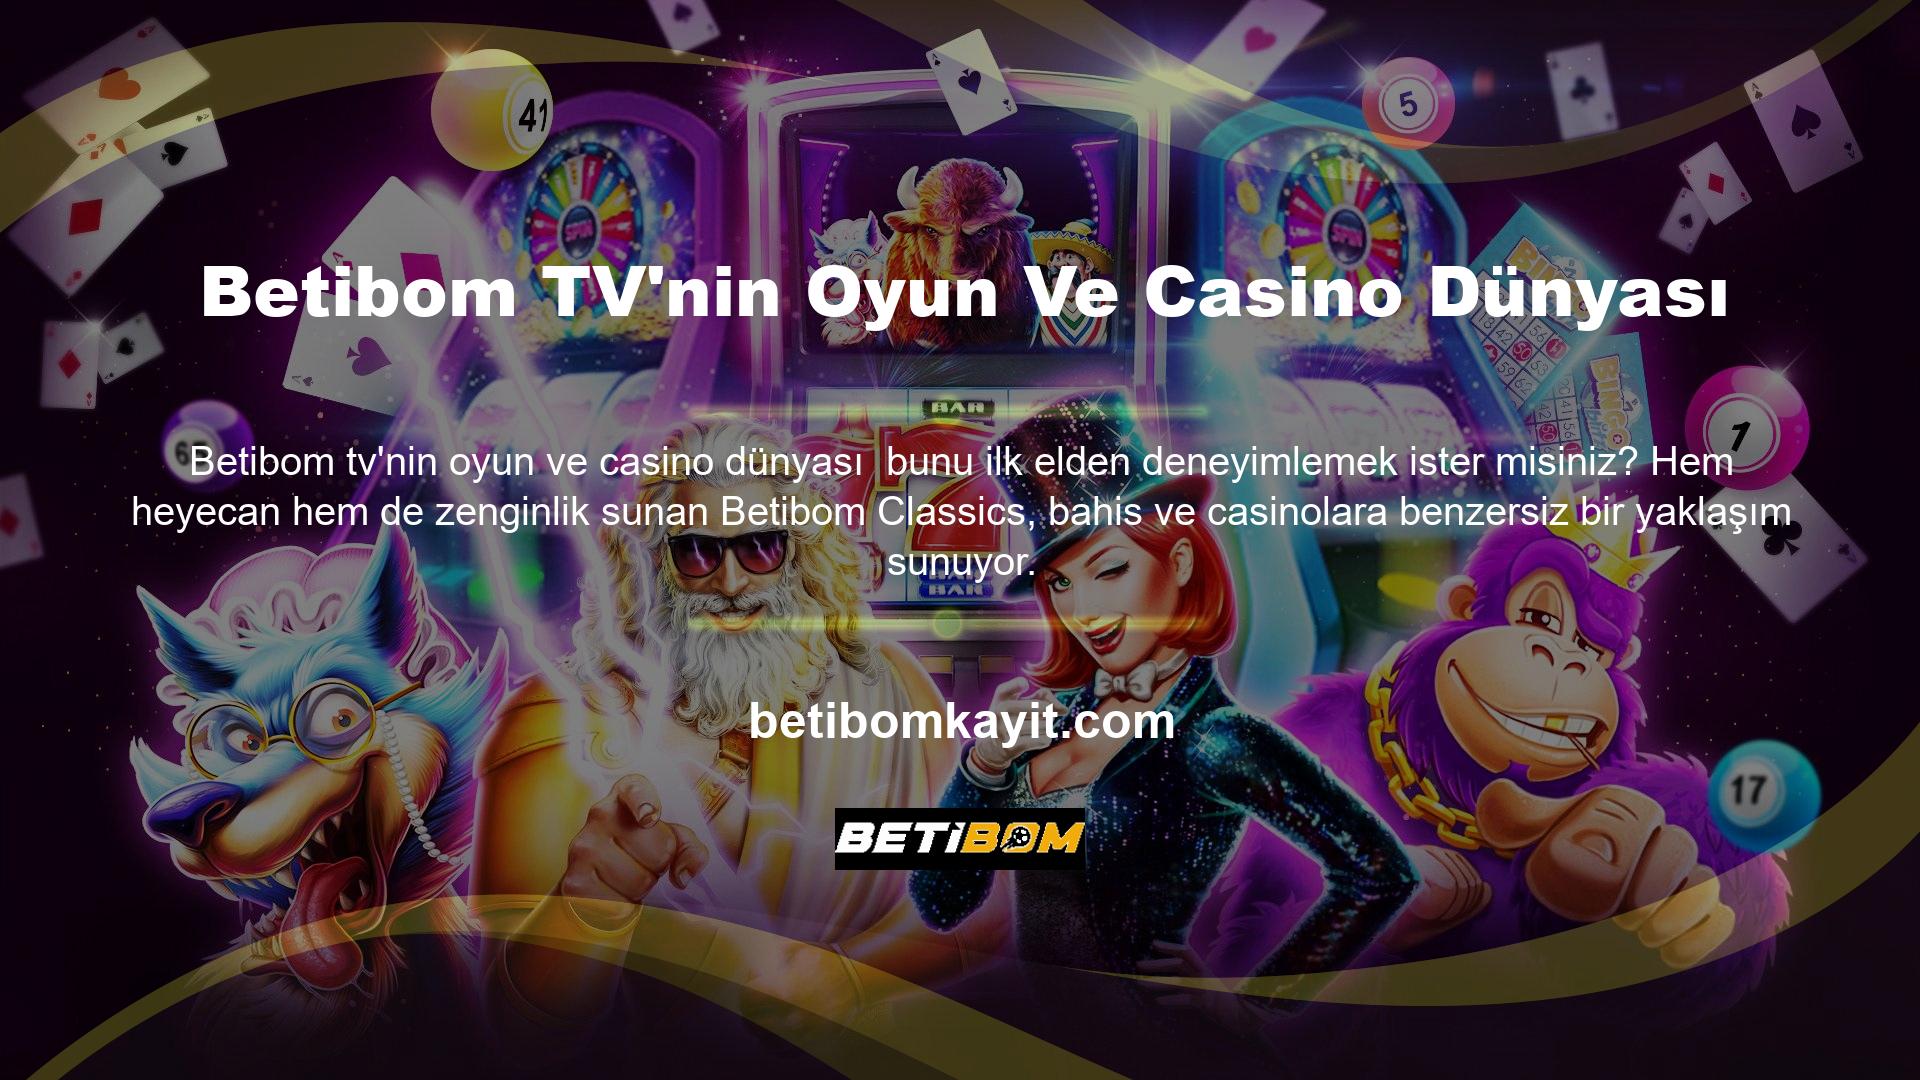 Betibom sistemi, kullanıcılara diğer etkinliklerin yanı sıra spor bahisleri, canlı bahisler ve sanal oyunların yanı sıra casino, gerçek hayattaki casino/tavla ve Zeplin'e katılma fırsatı sağlar